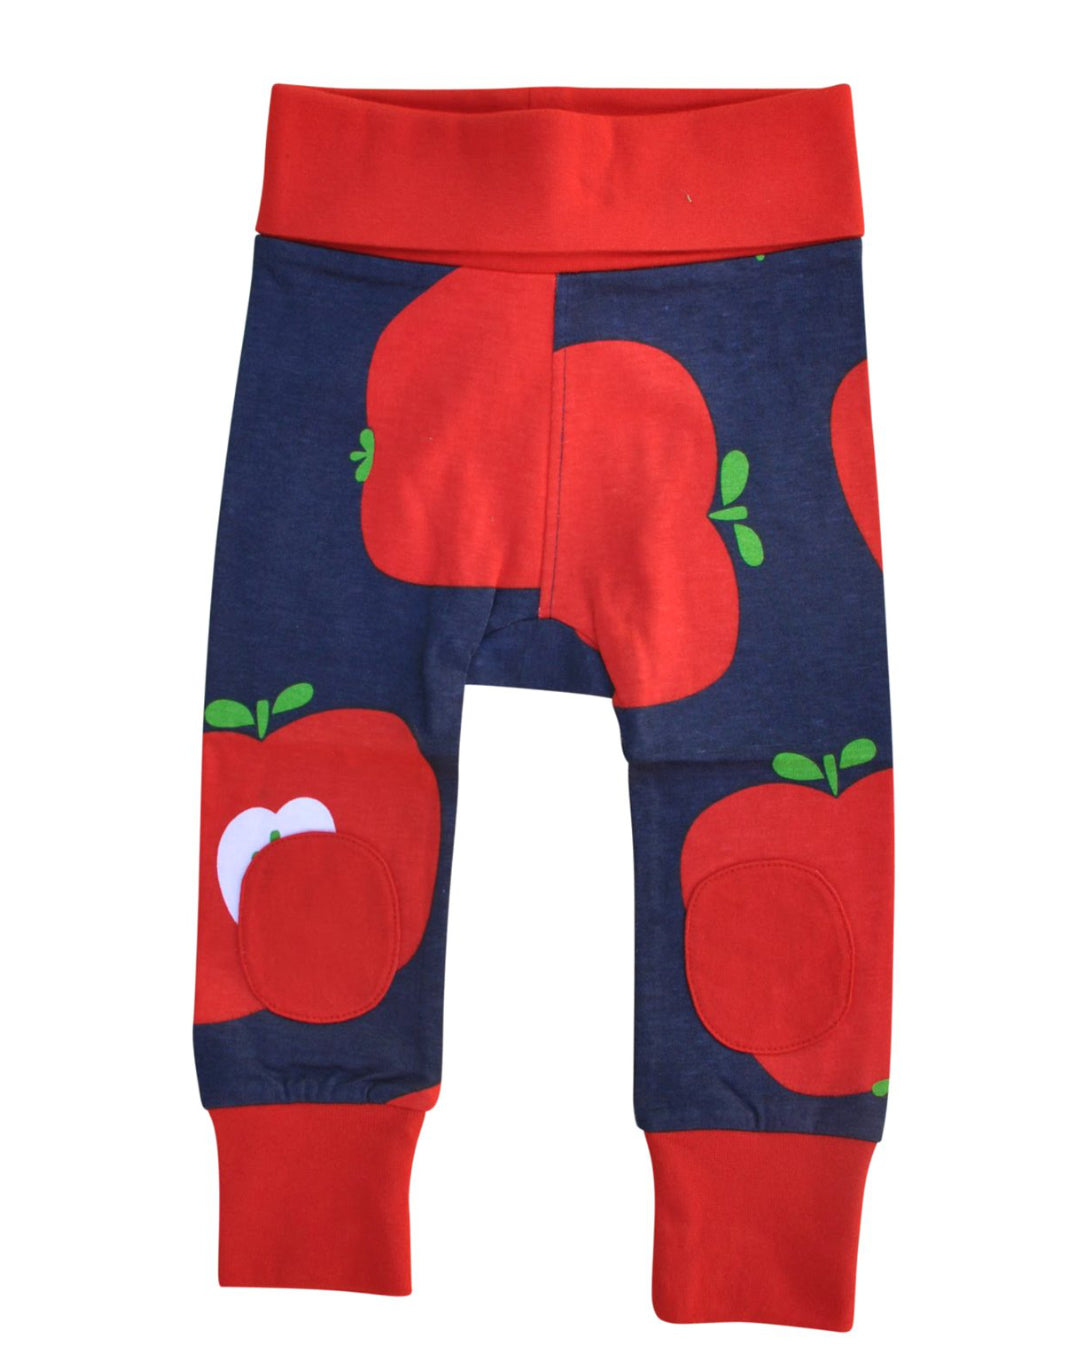 Babyhose in dunkelblau mit großen roten Äpfeln aus Biobaumwolle von moromini Bund am Bauch und Beinen rot abgesetzt